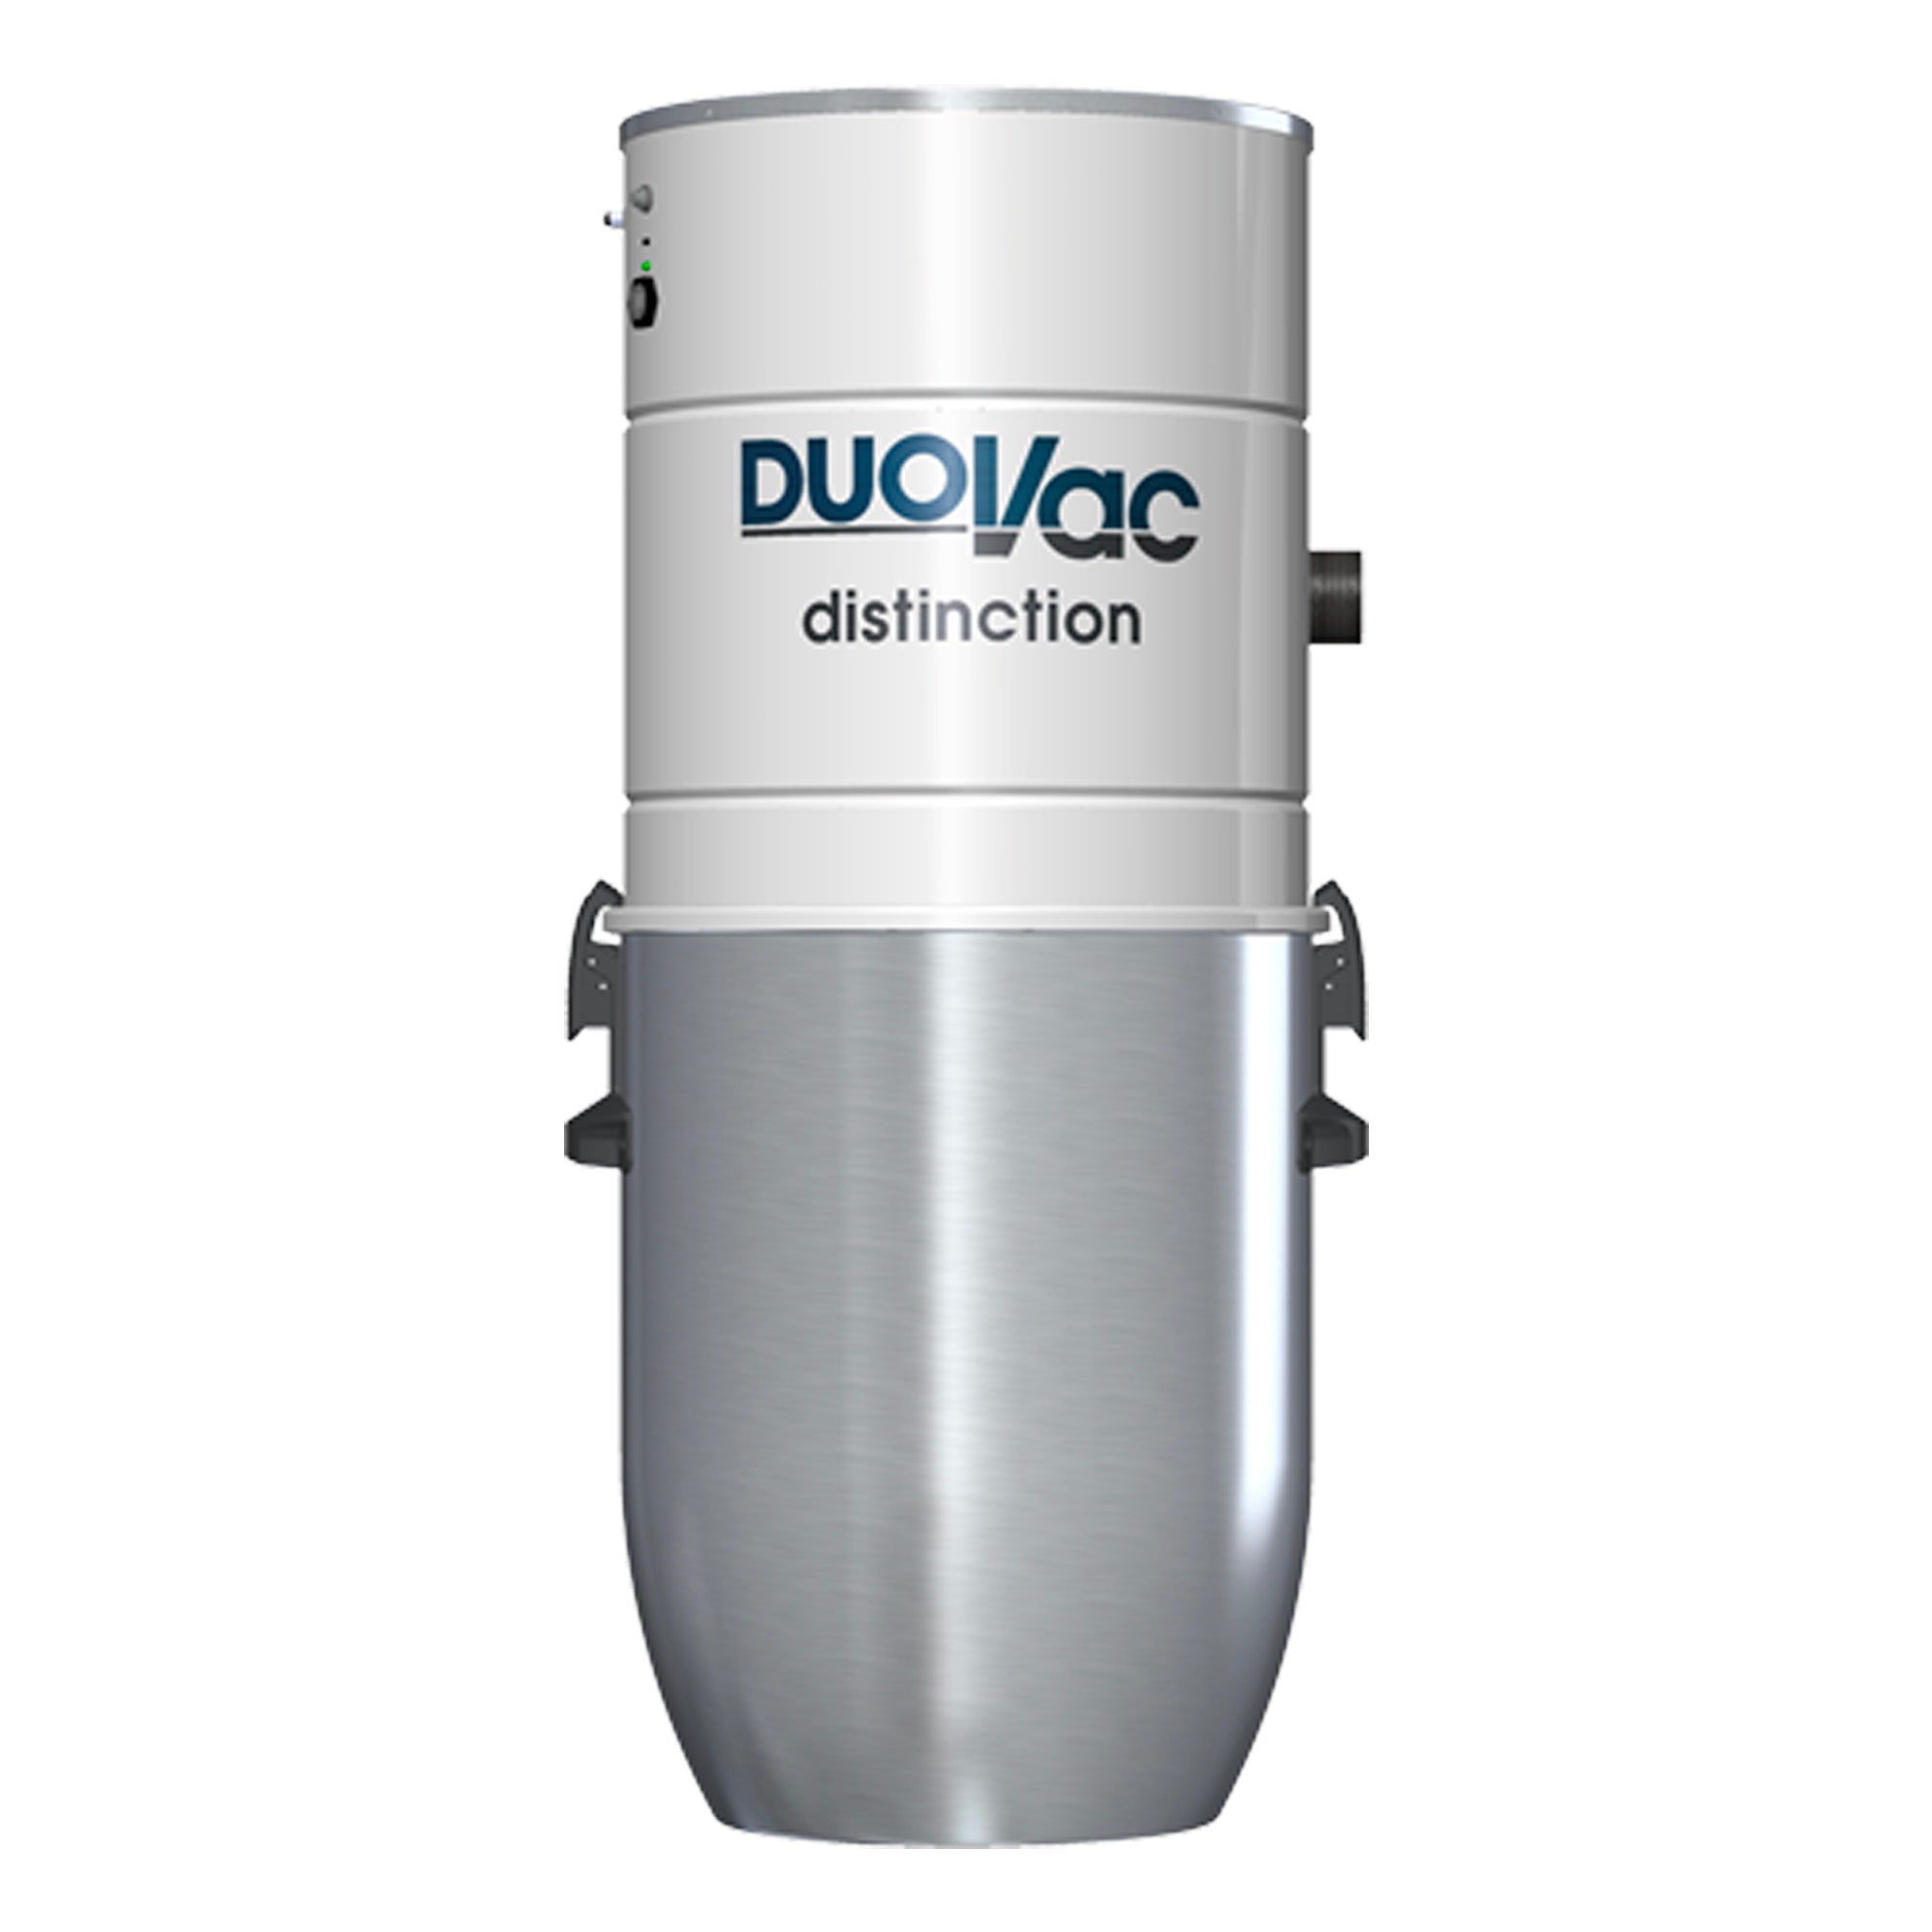 DuoVac Distinction Central Vacuum Power Unit